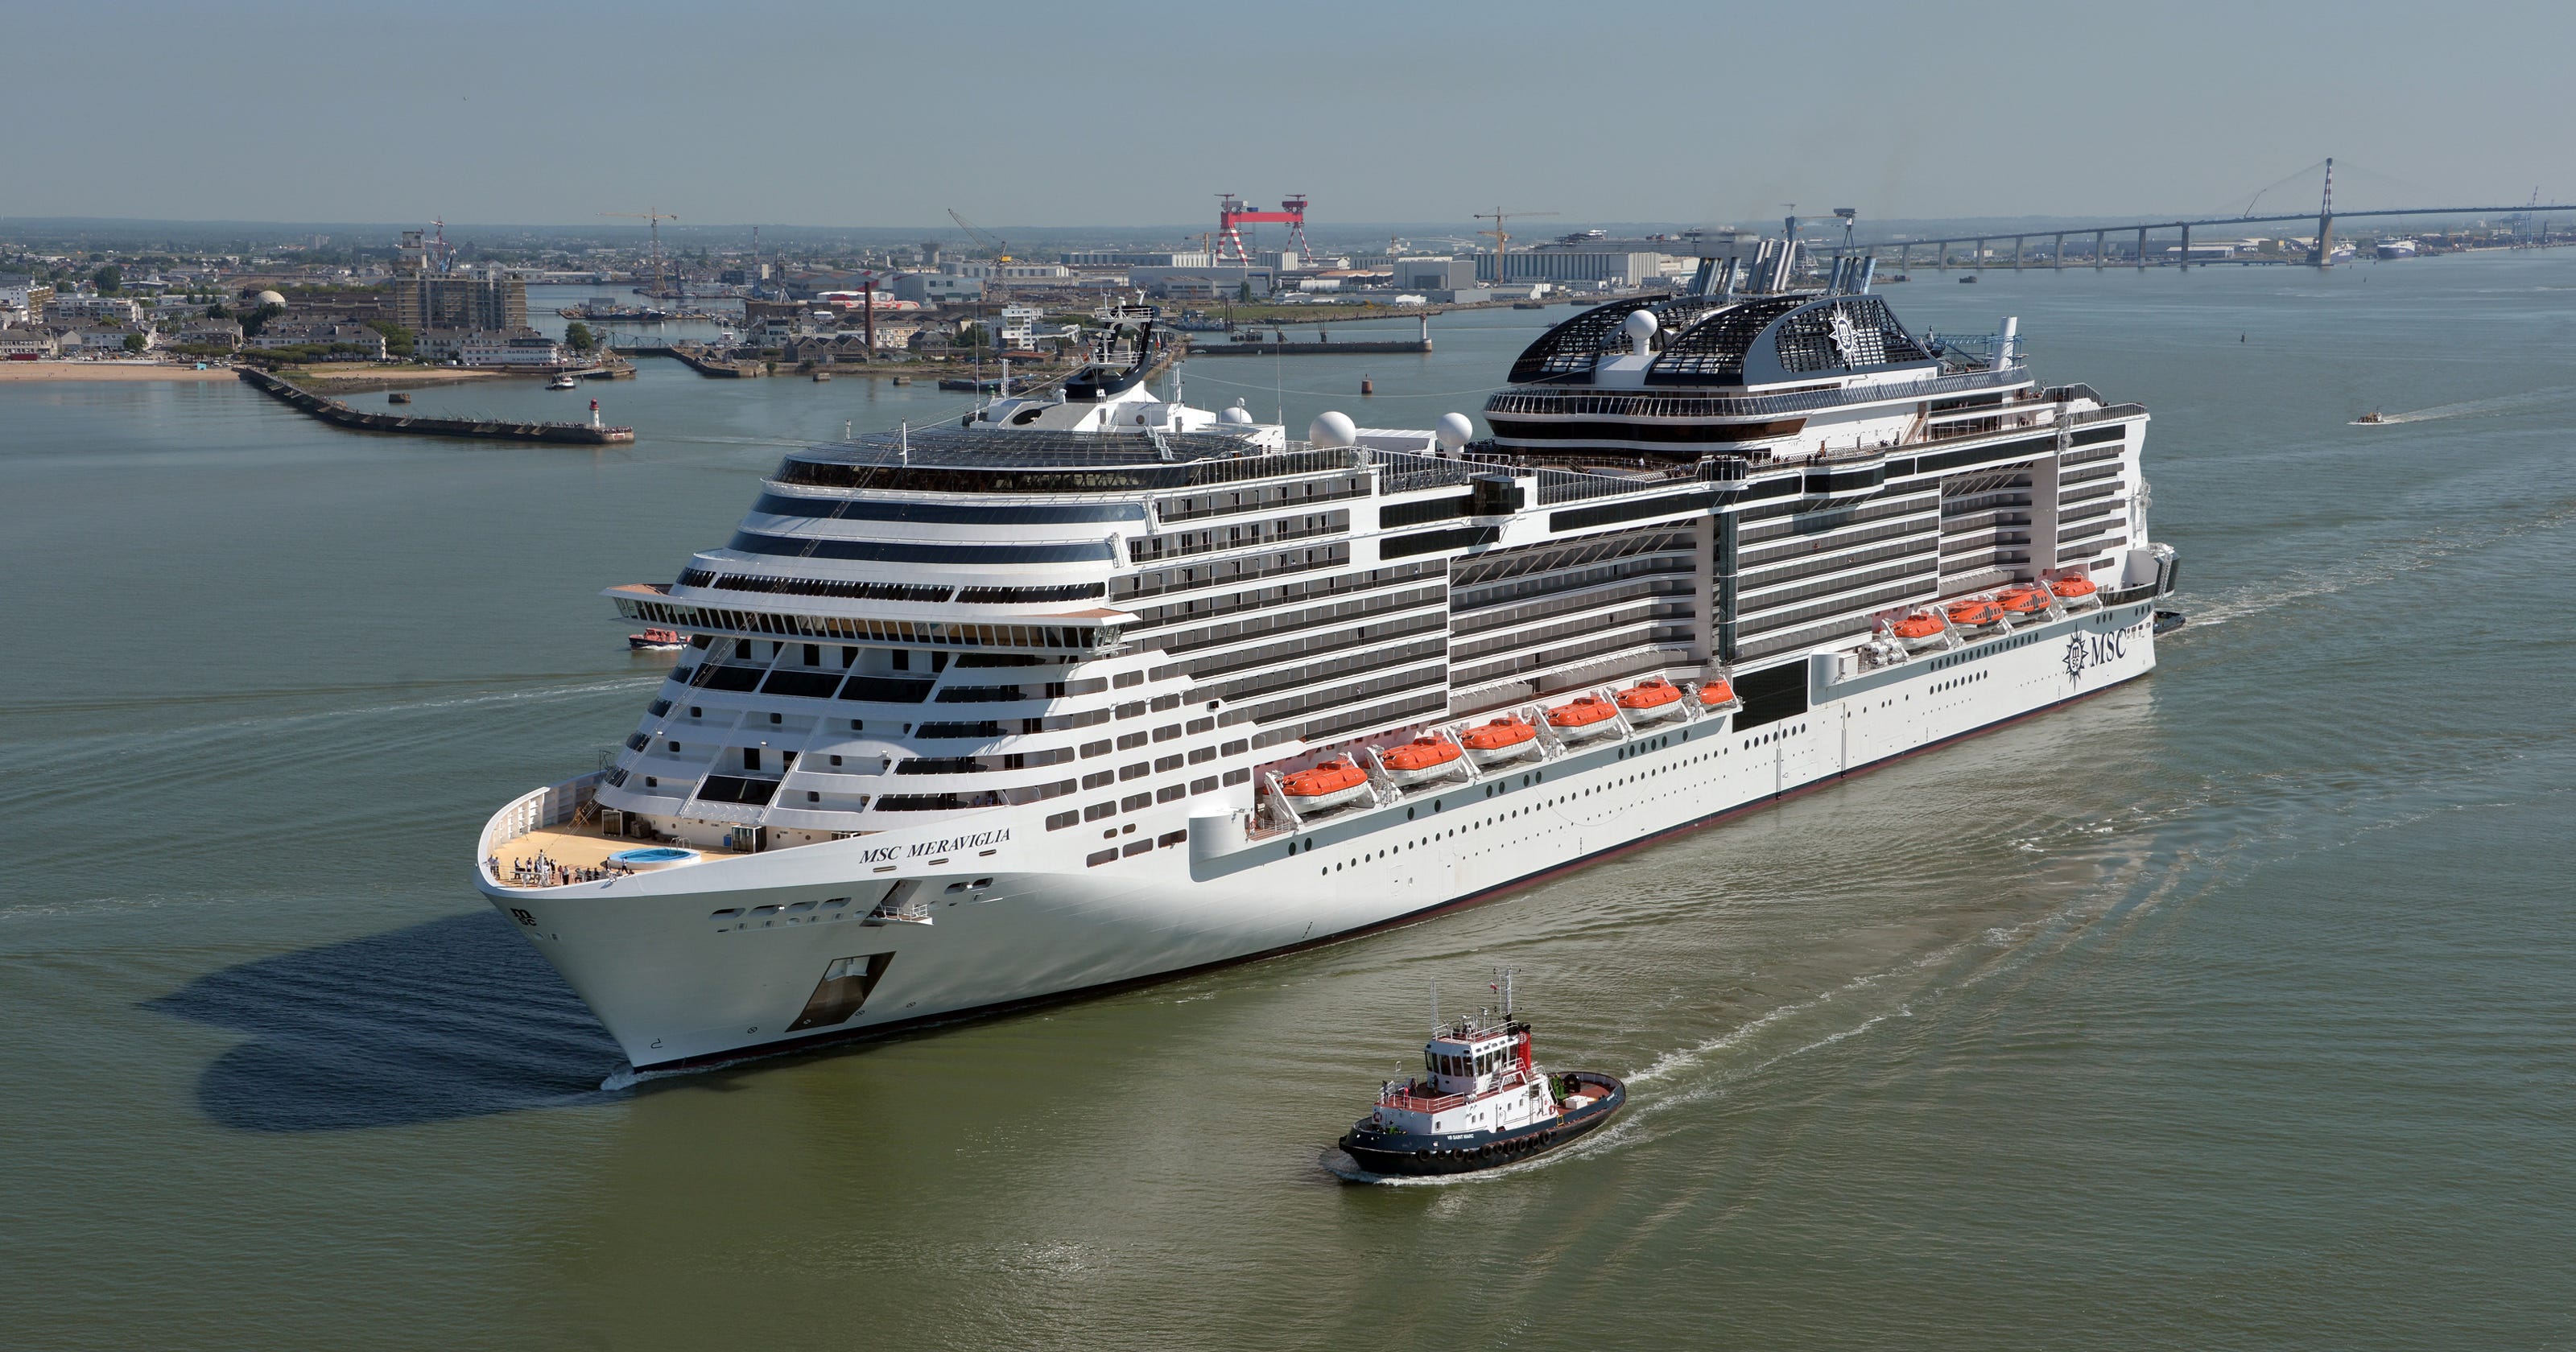 New cruise ships for 2019: MSC Cruises' MSC Bellissima